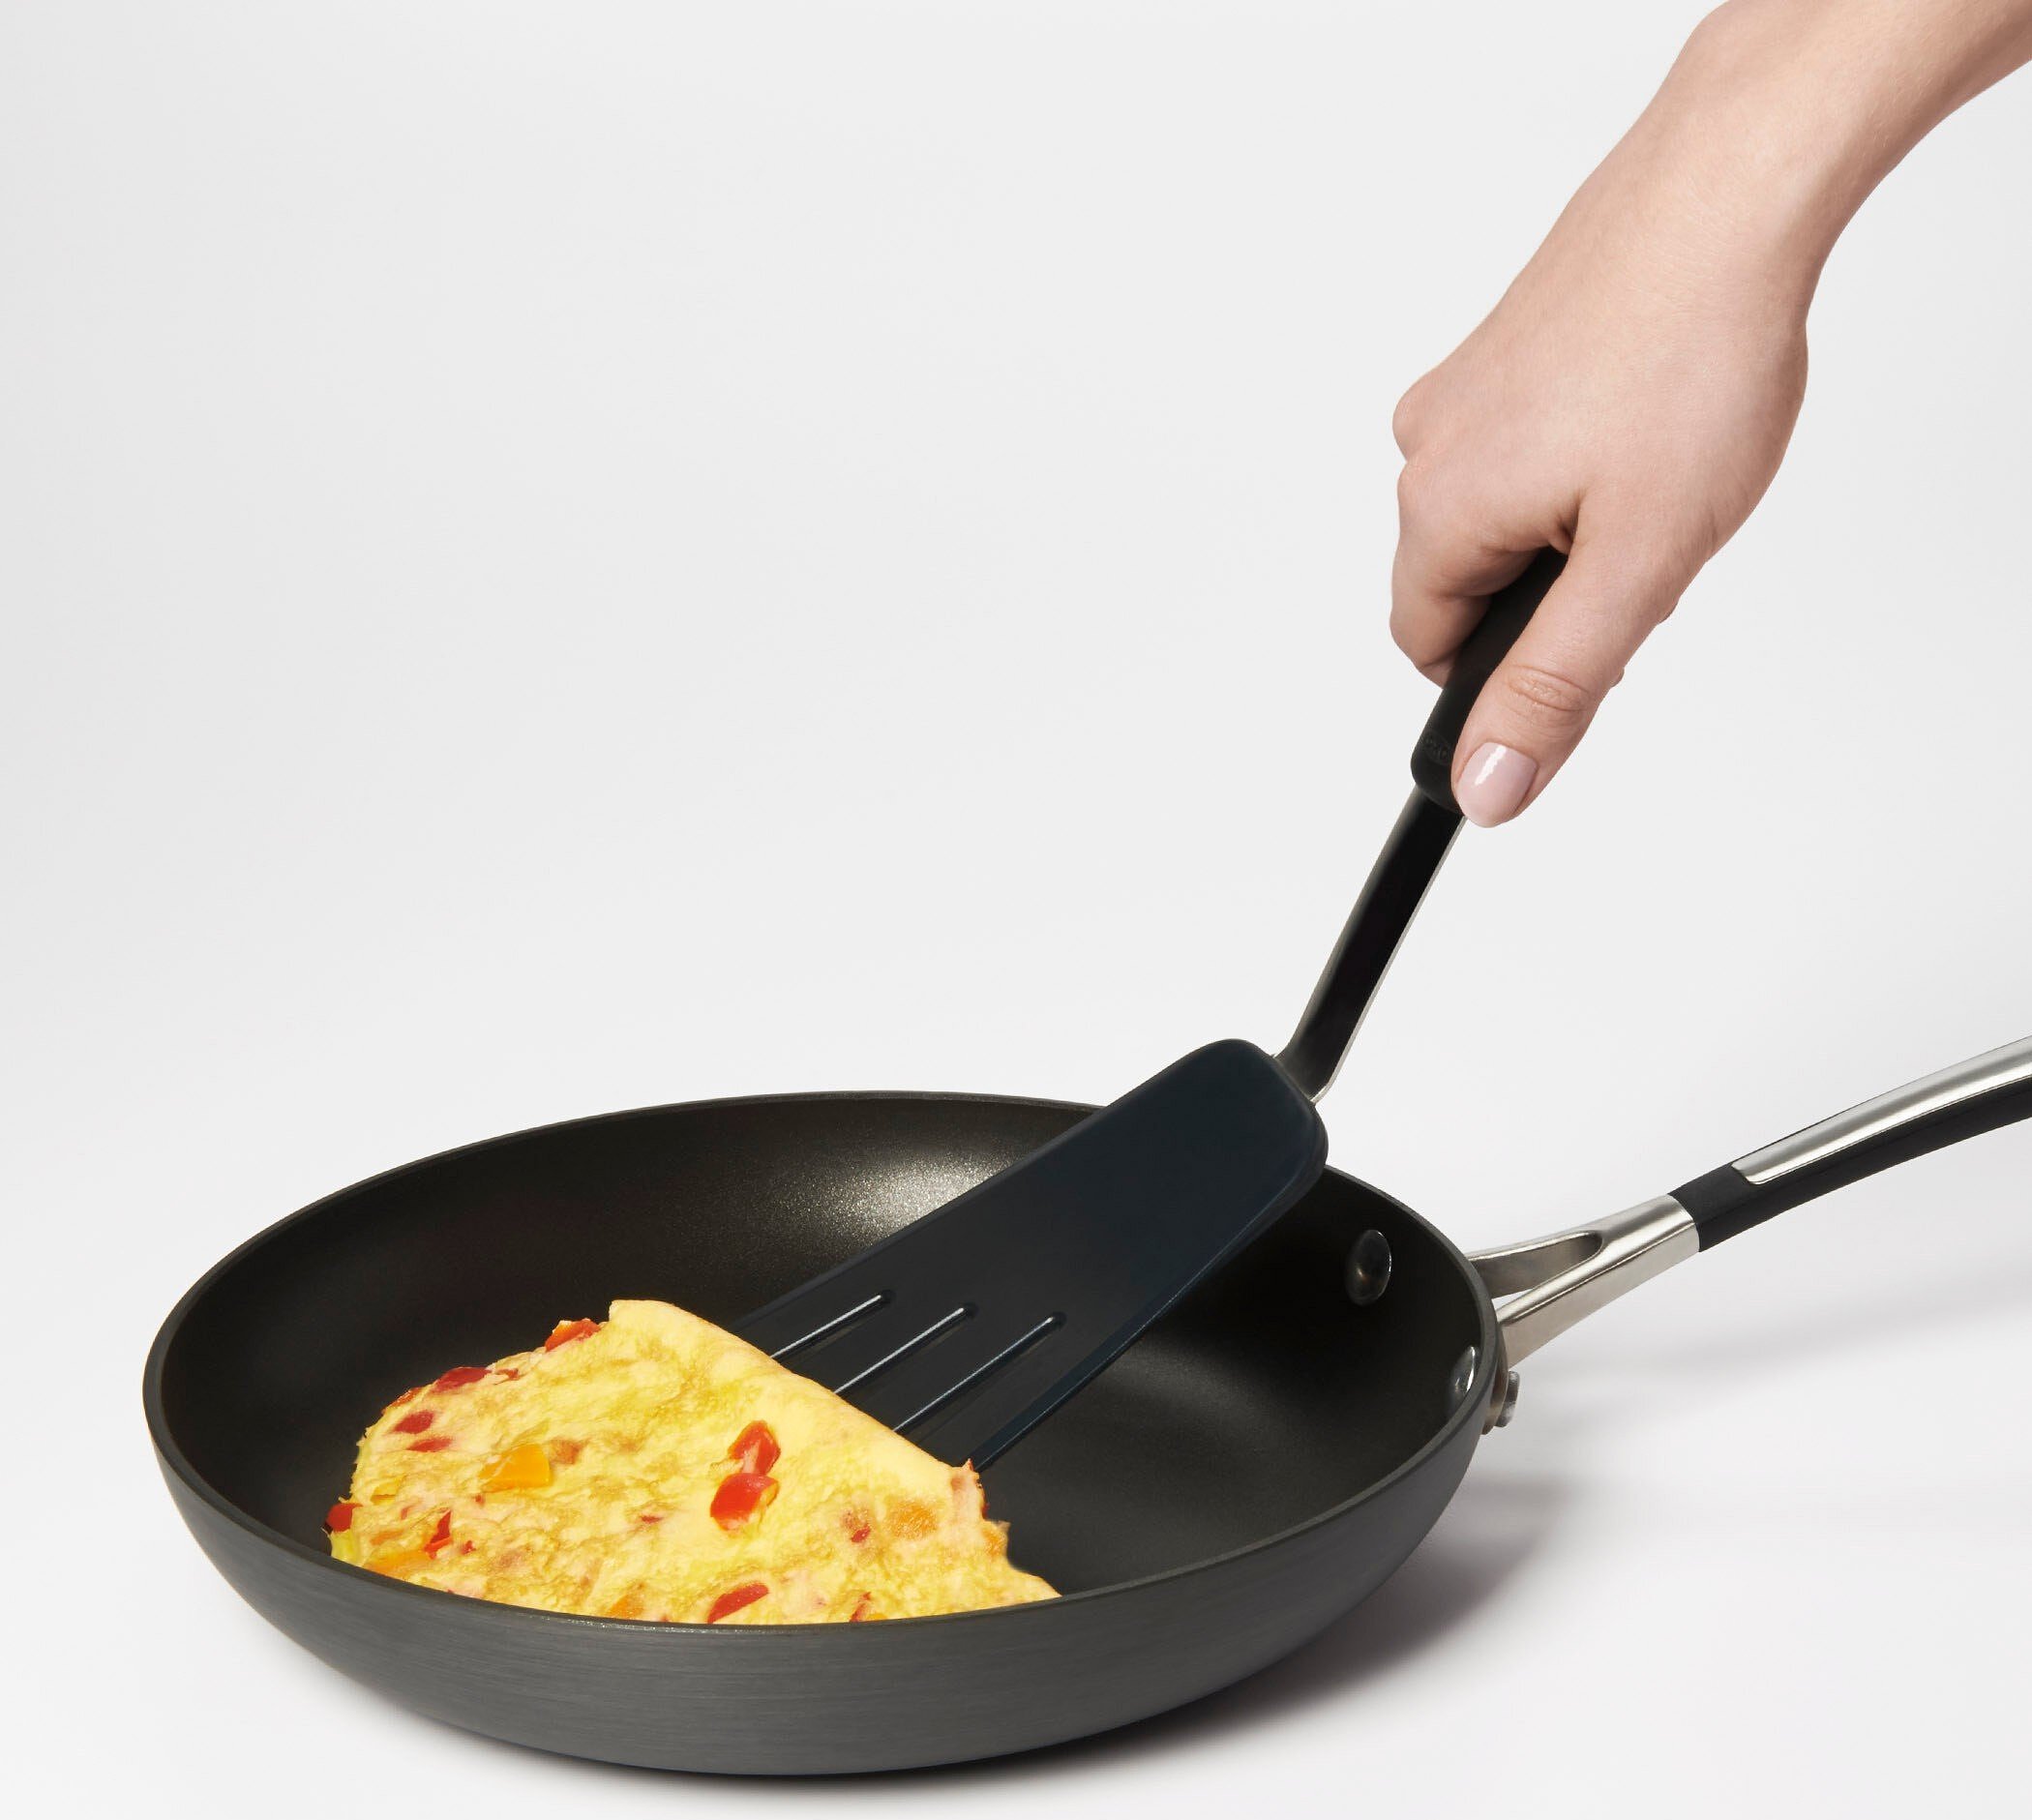 https://3fa-media.com/oxo/oxo-flex-good-grips-omelette-spatula__1071532MLNYK-1-s2500x2500.jpg